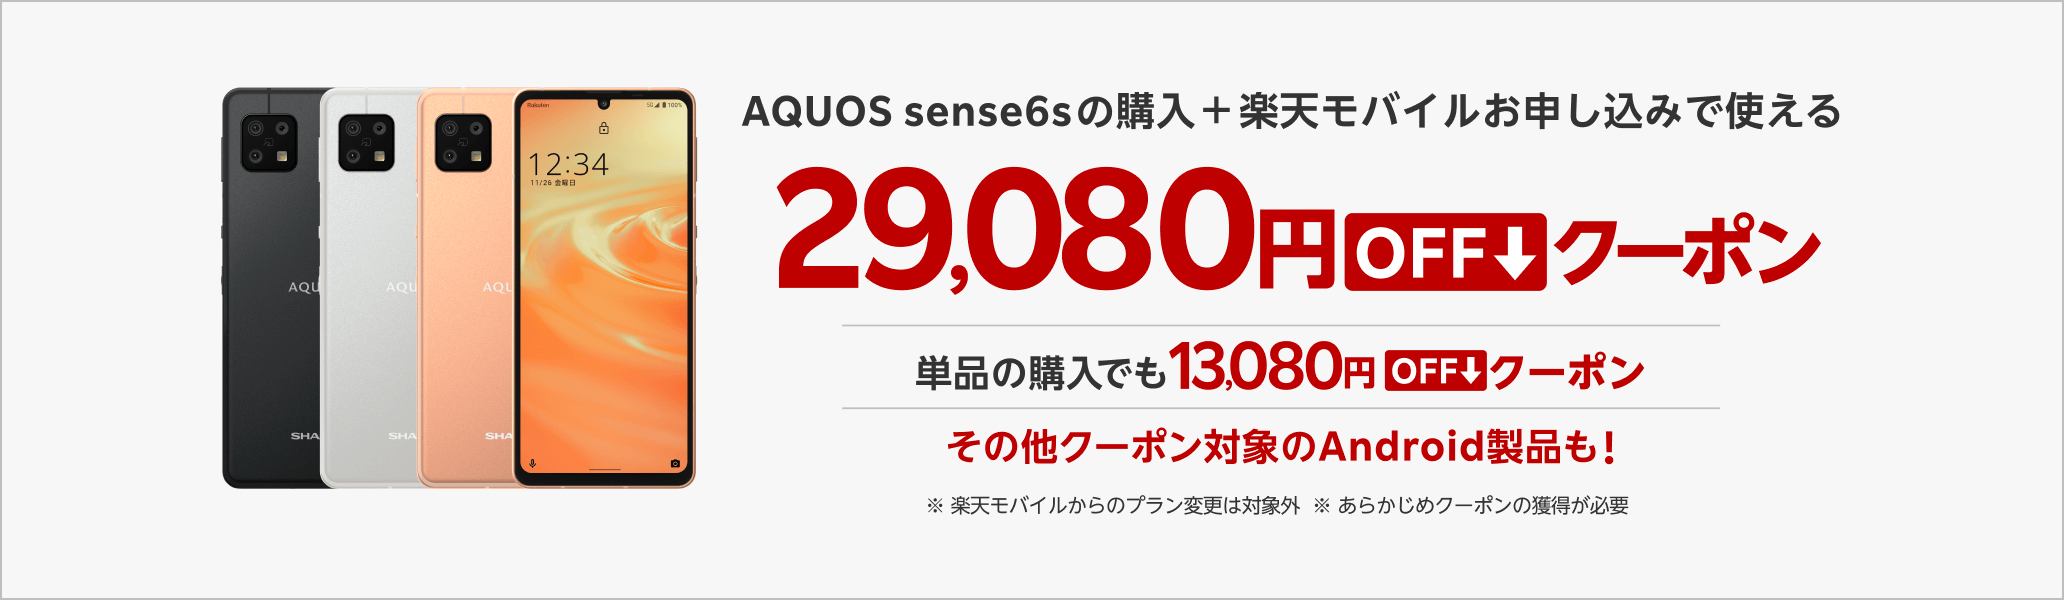 【楽天市場店限定】AQUOS sense6sの回線セット申し込みで使える29,080円OFFクーポン